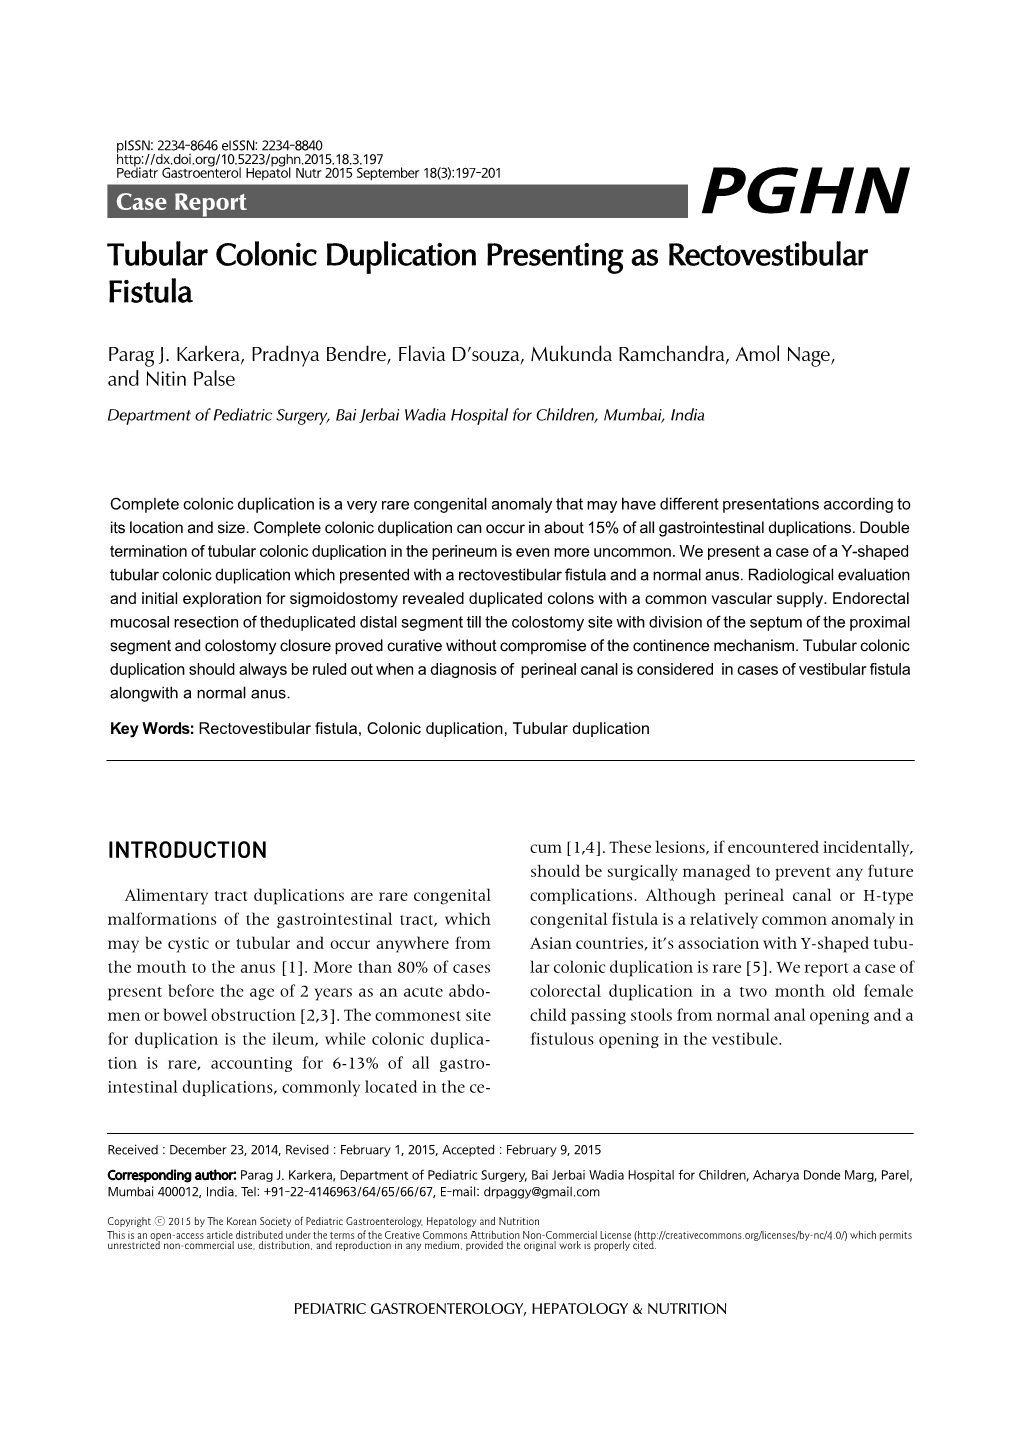 Tubular Colonic Duplication Presenting As Rectovestibular Fistula